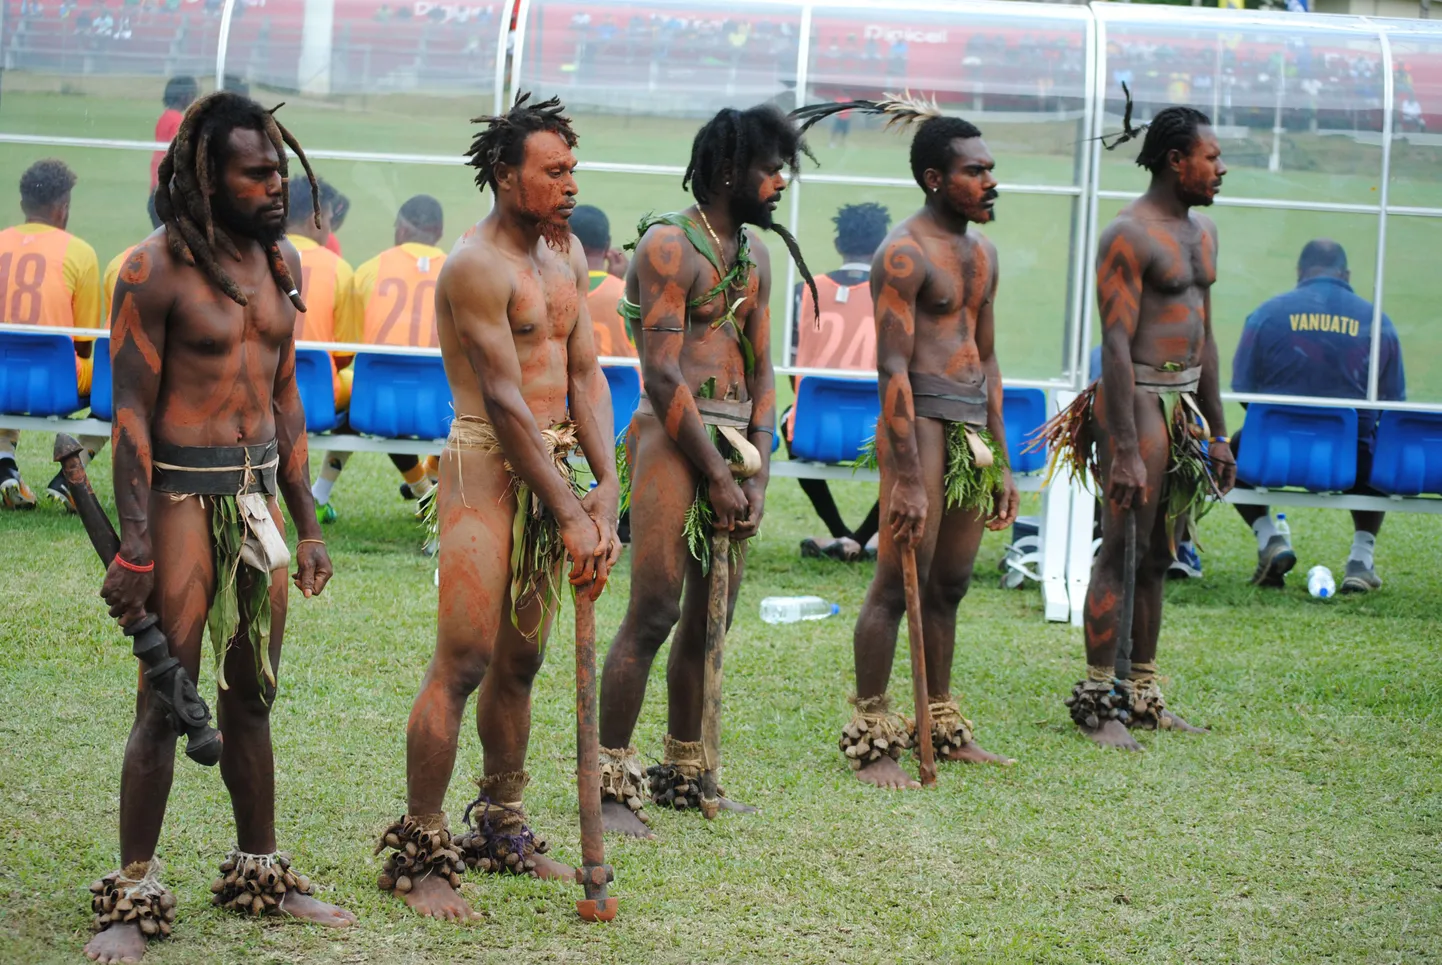 Vanuatu – Eesti A-maavõistlus jalgpallis. Vanuatu koondise vahetuspingi taga seisavad auvalves rahvariietes kohalikud.